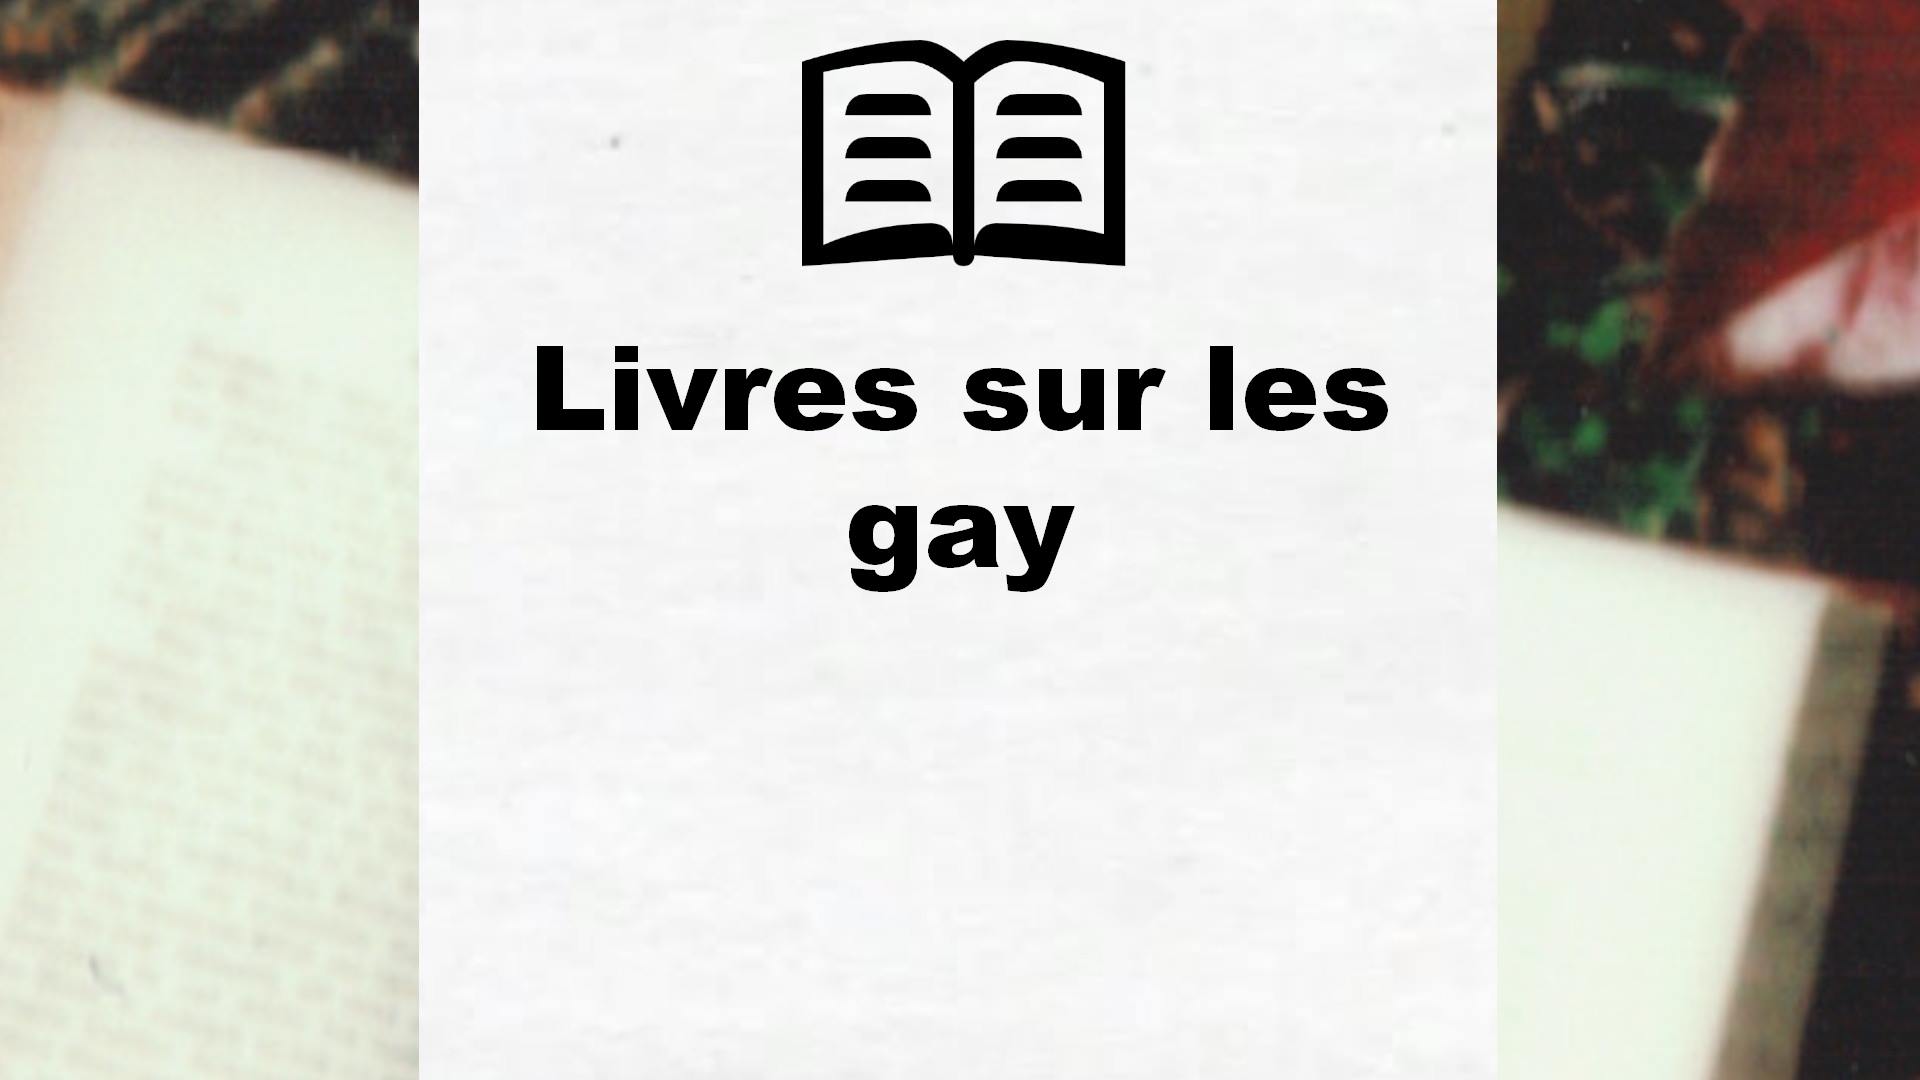 Livres sur les gay